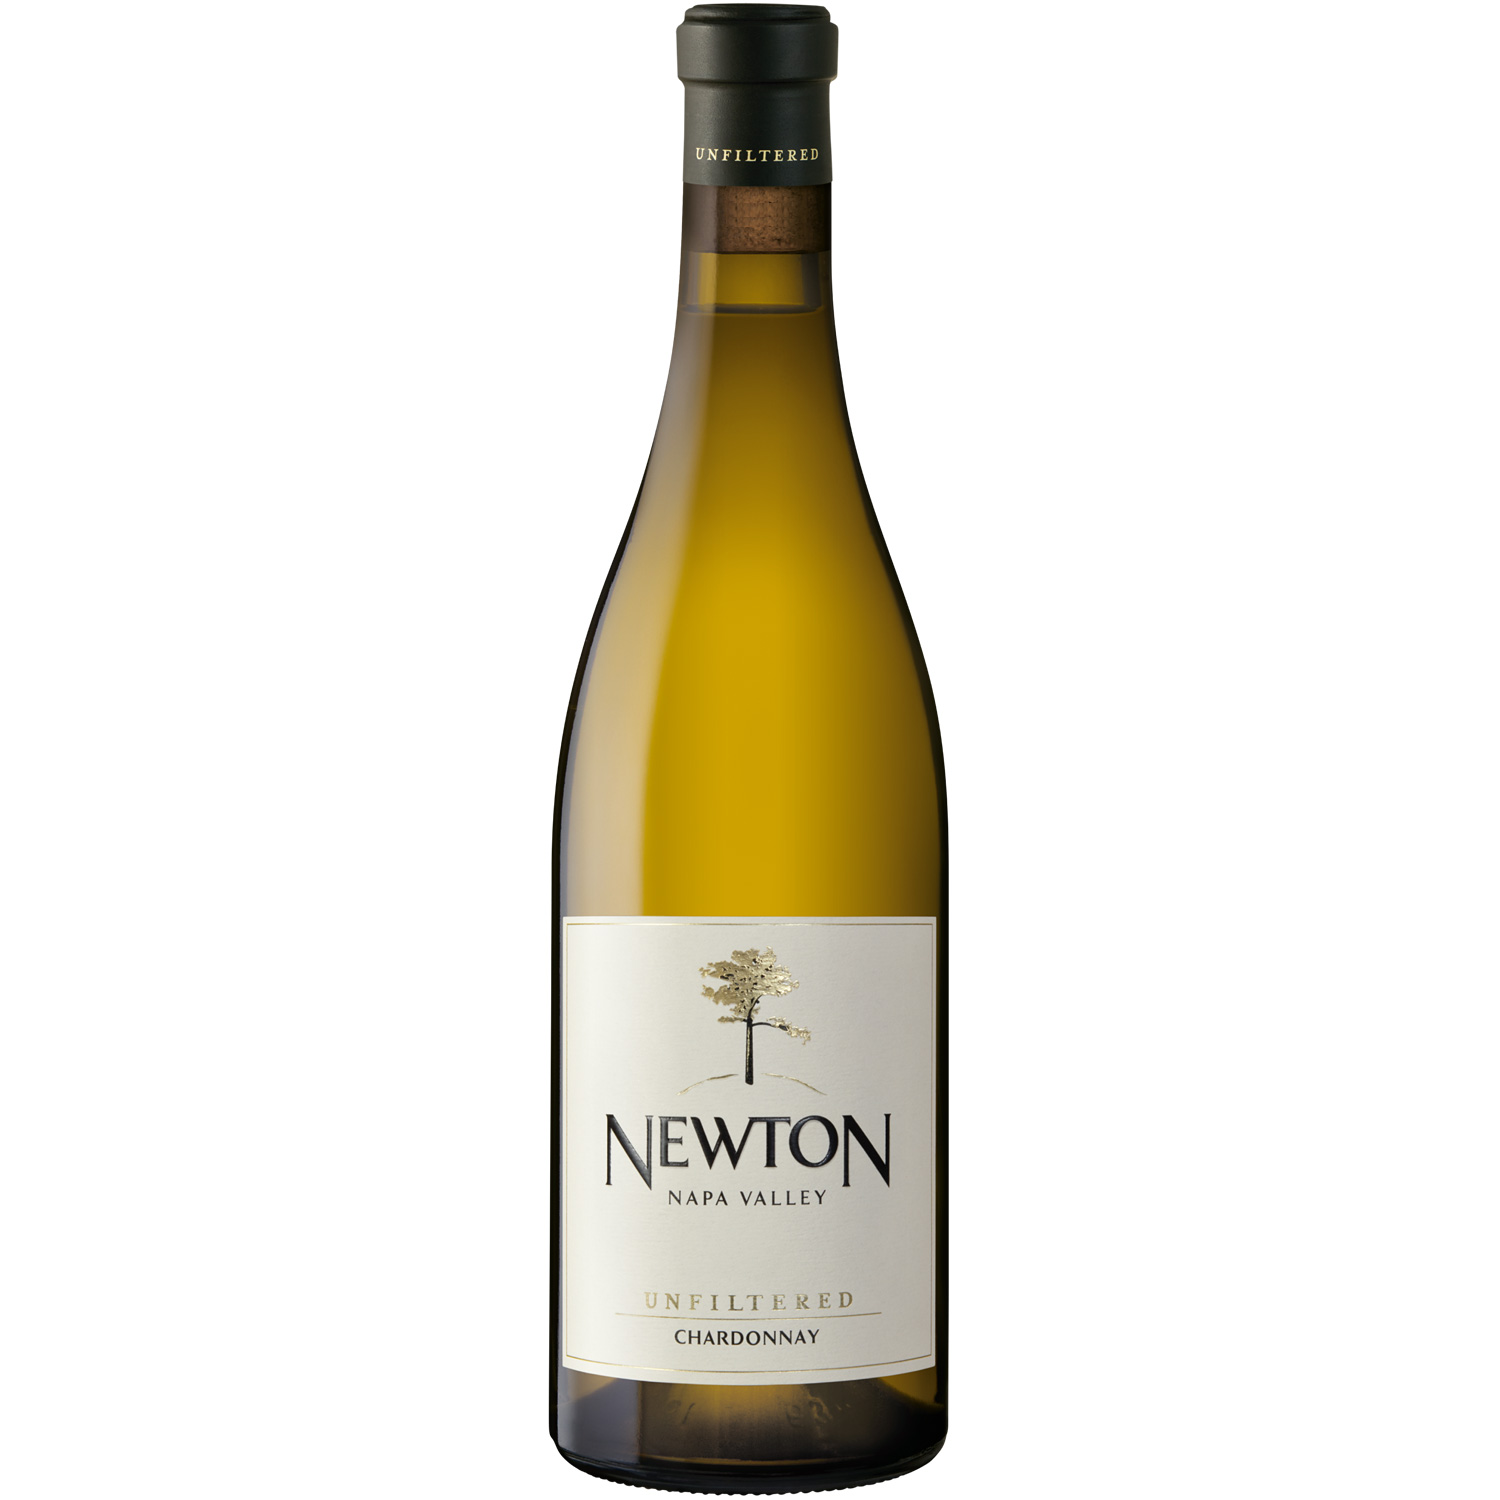 Newton Unfilterd Chardonnay 2017